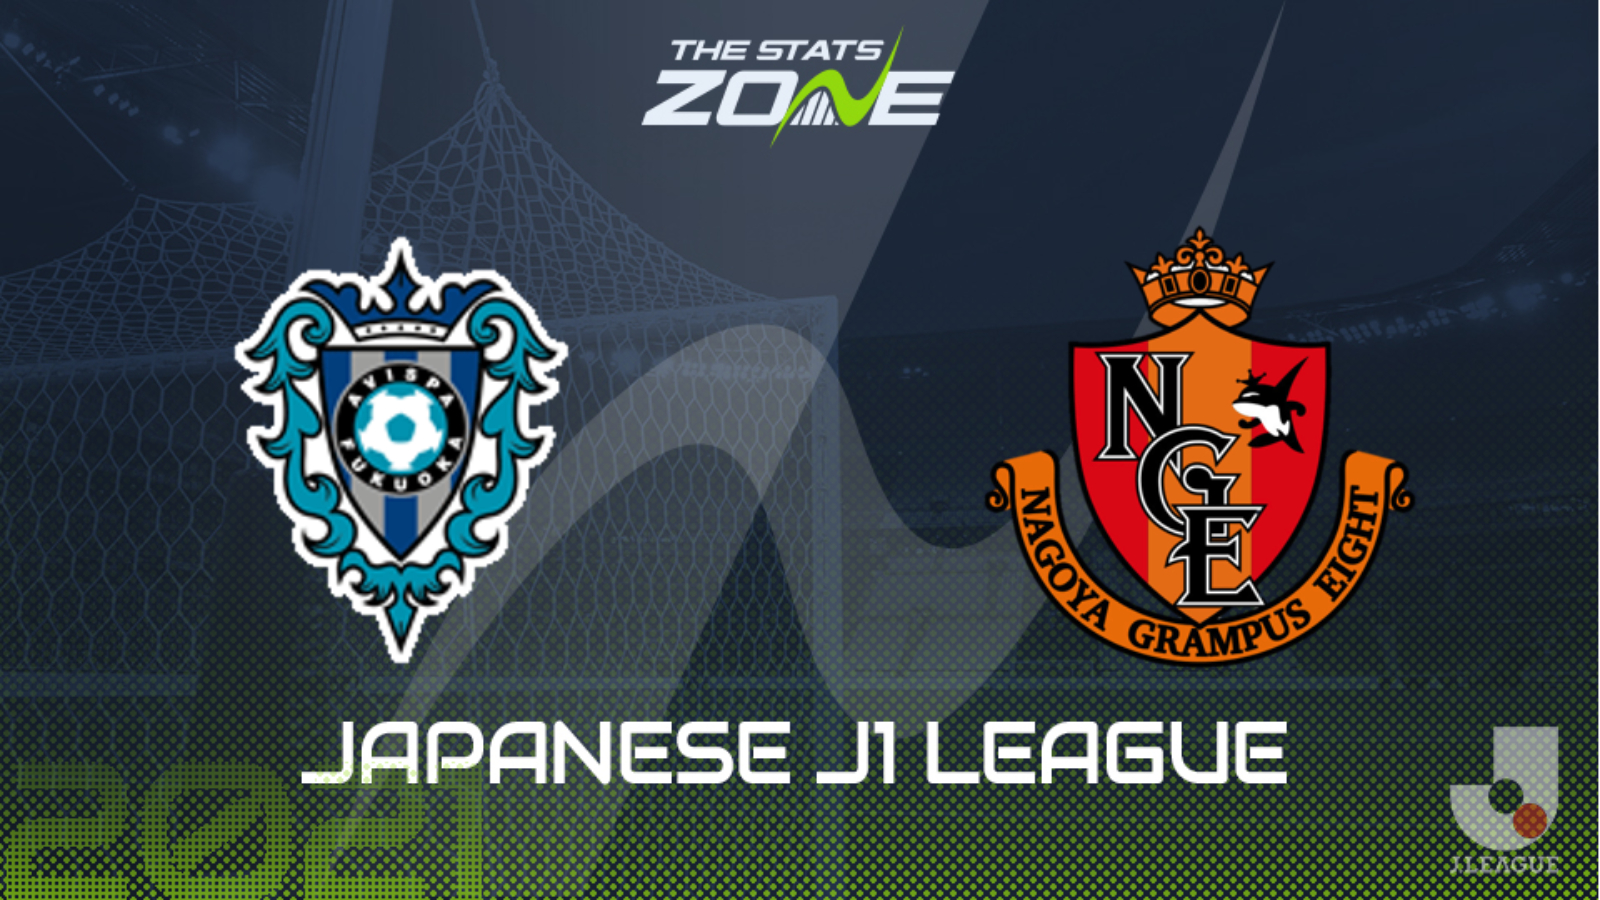 21 Japanese J1 League Avispa Fukuoka Vs Nagoya Grampus Preview Prediction The Stats Zone